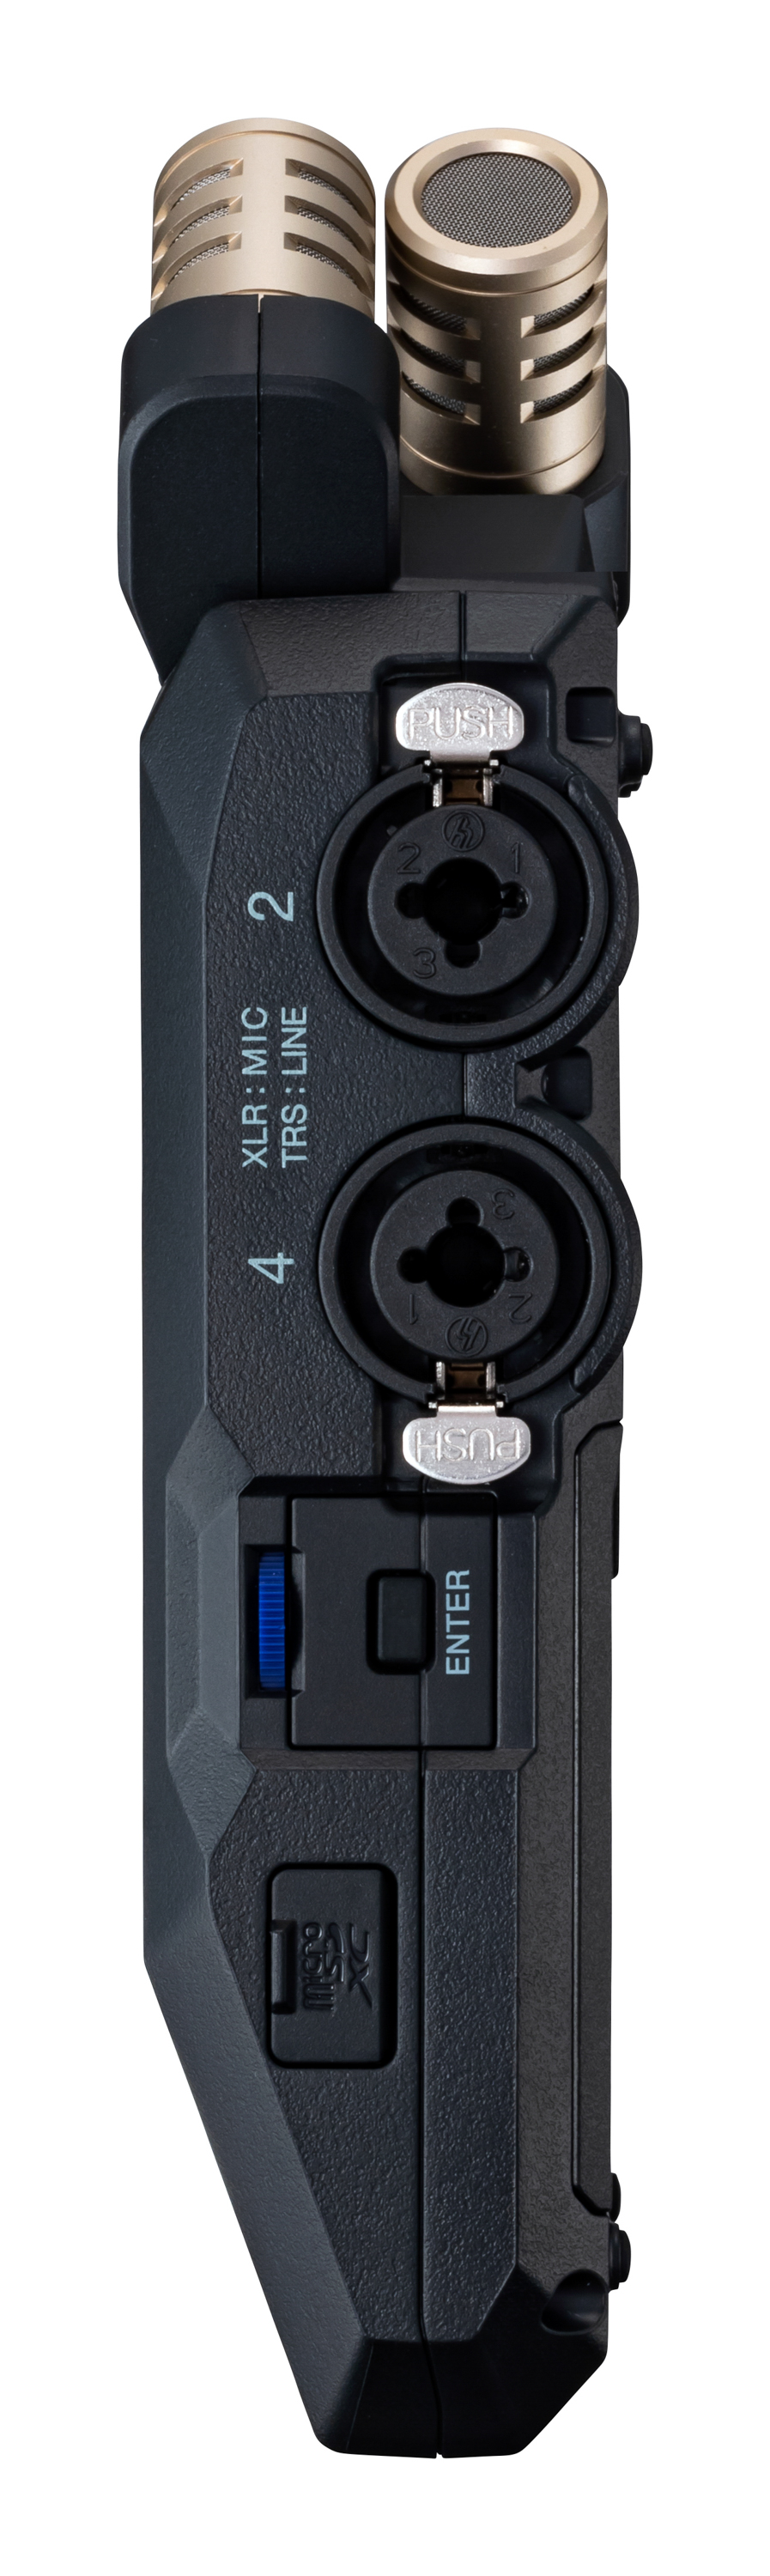 Zoom H6 Essential - Grabadora portátil - Variation 3